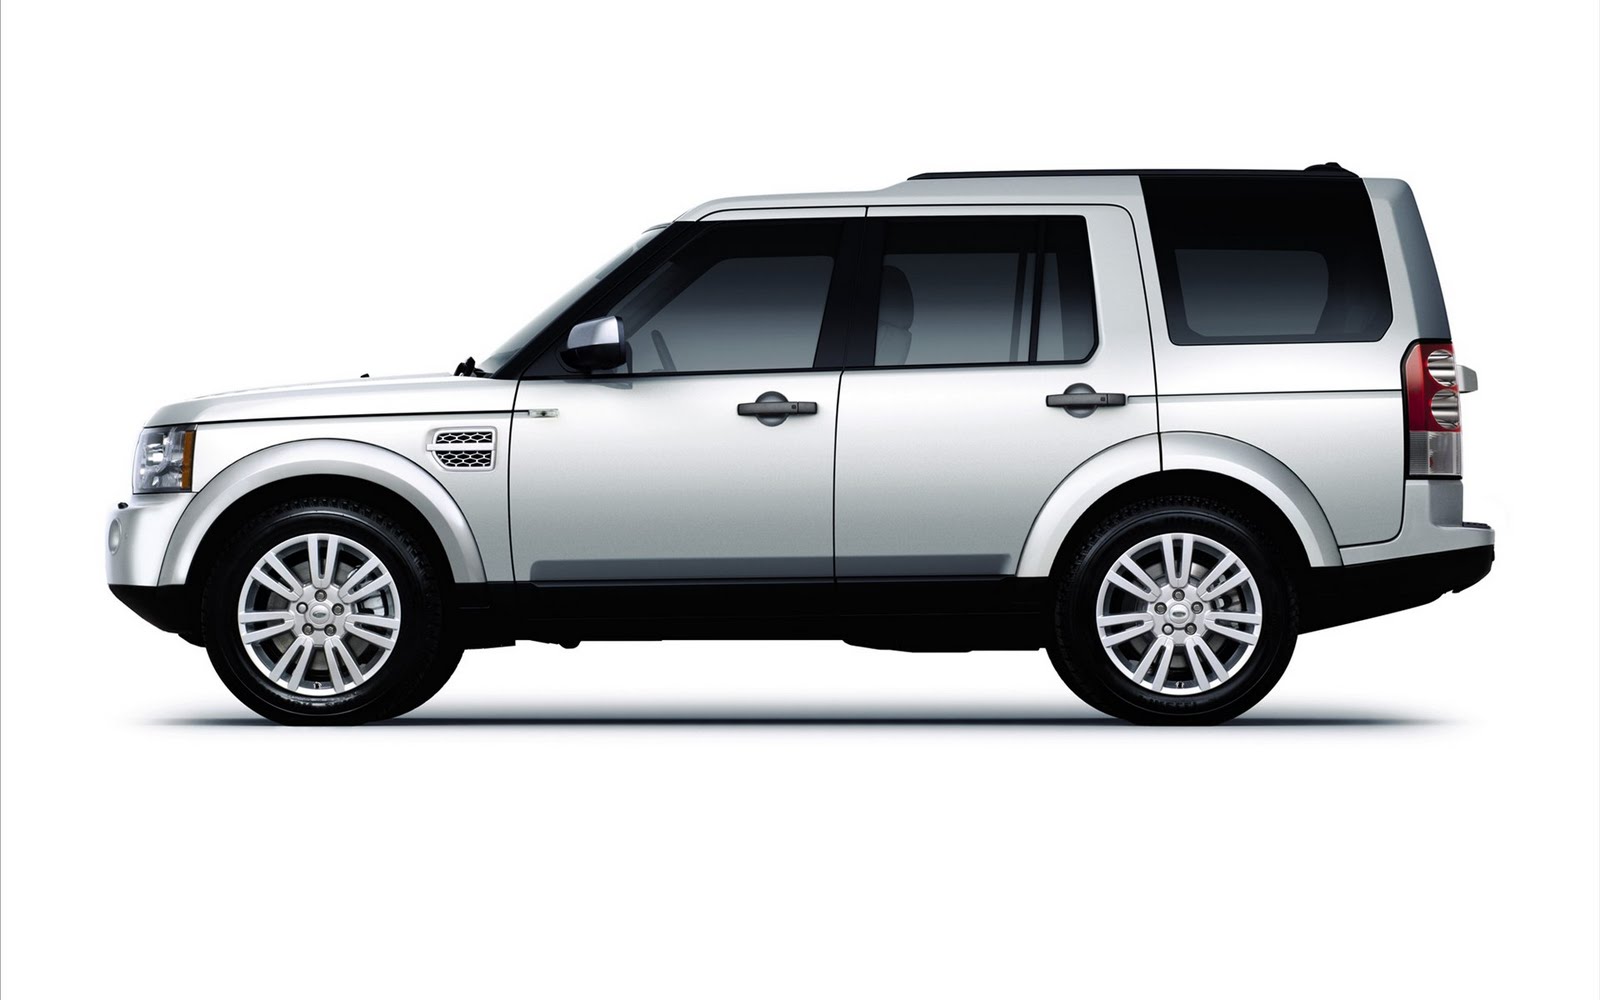 2016 Land Rover Range Rover Evoque Photos and Info  - 2016 land rover range rover hybrid wallpapers